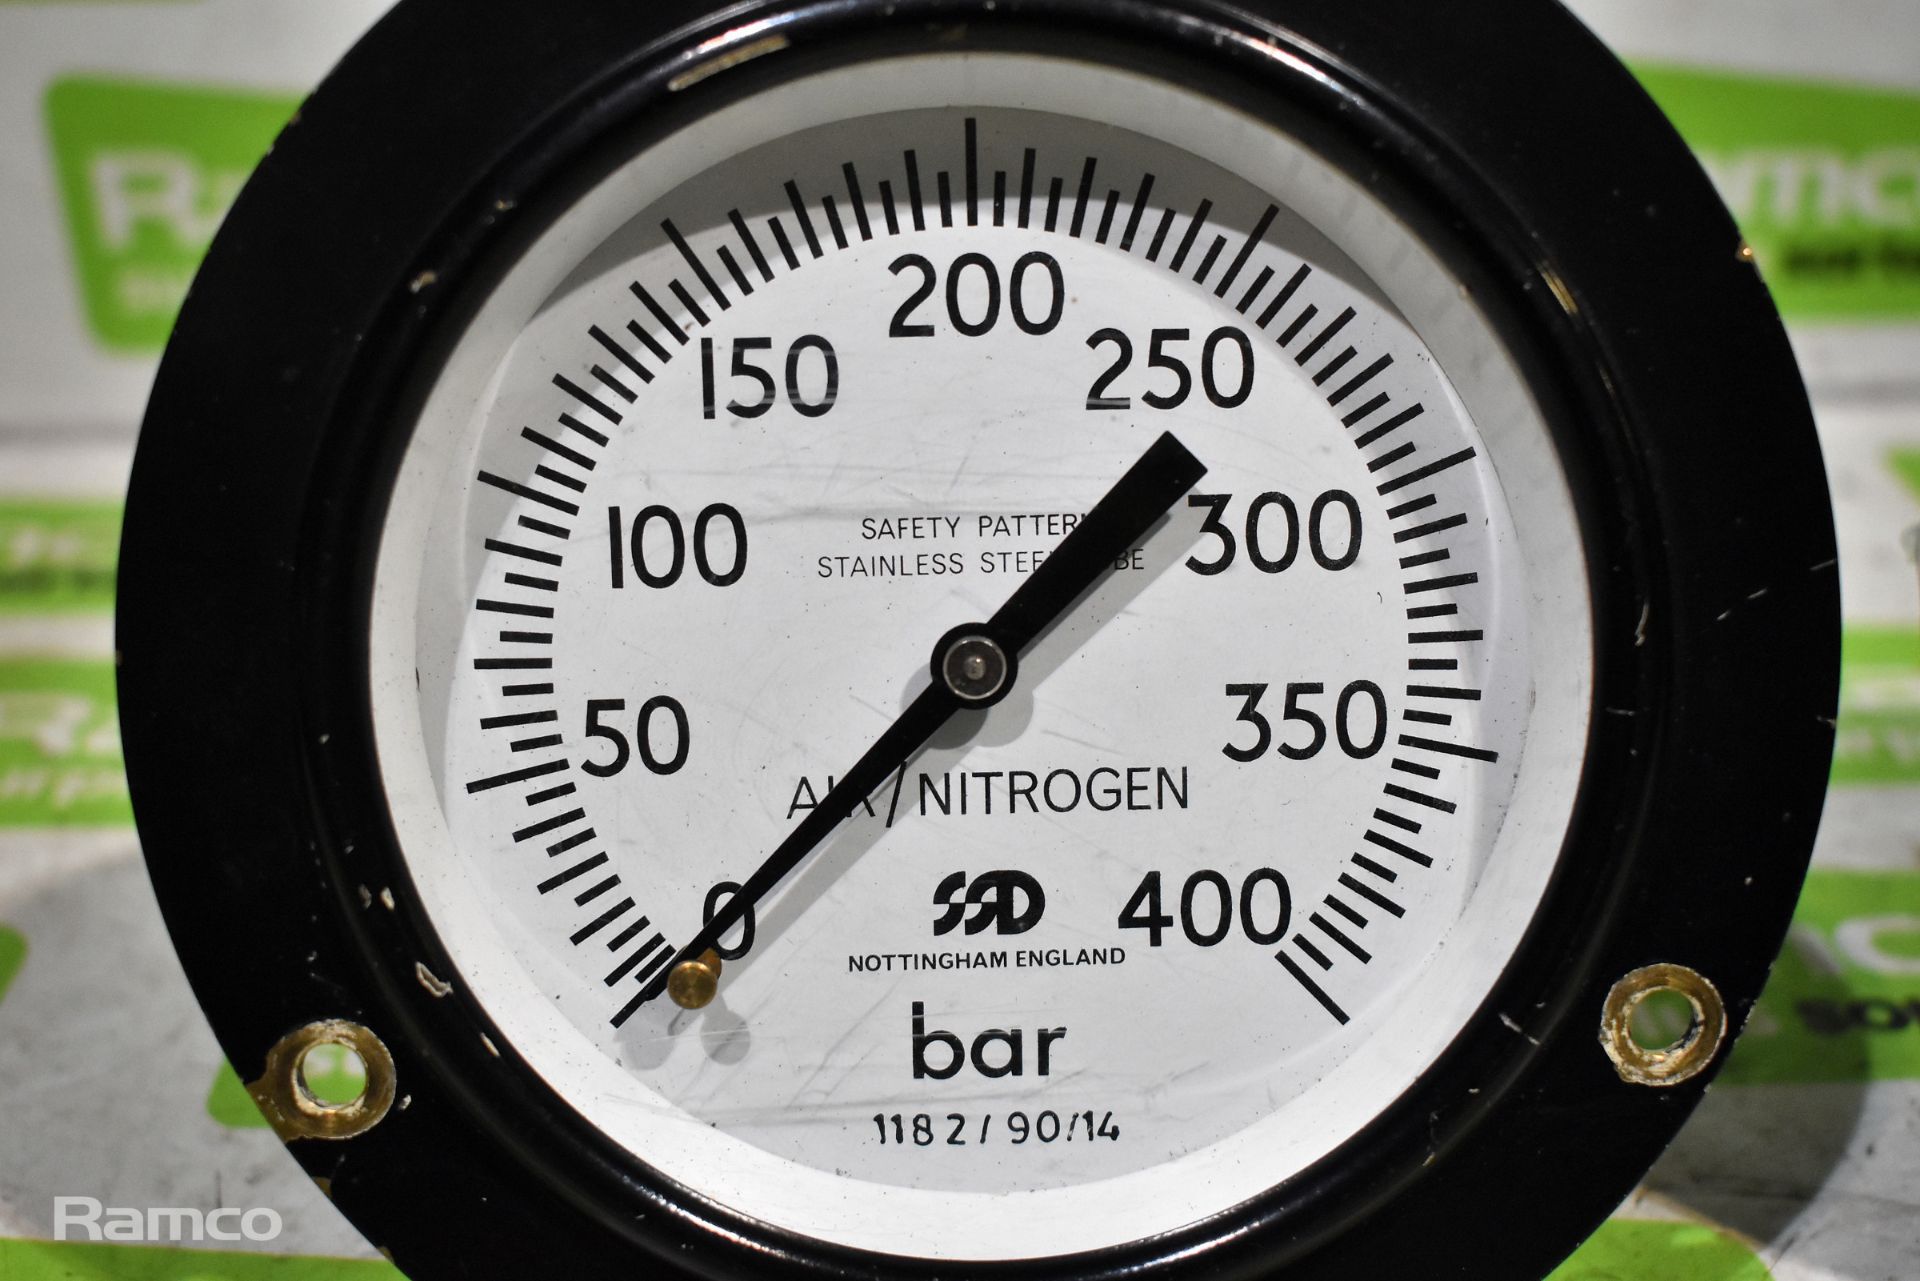 2x 400 bar pressure gauges - Image 2 of 4